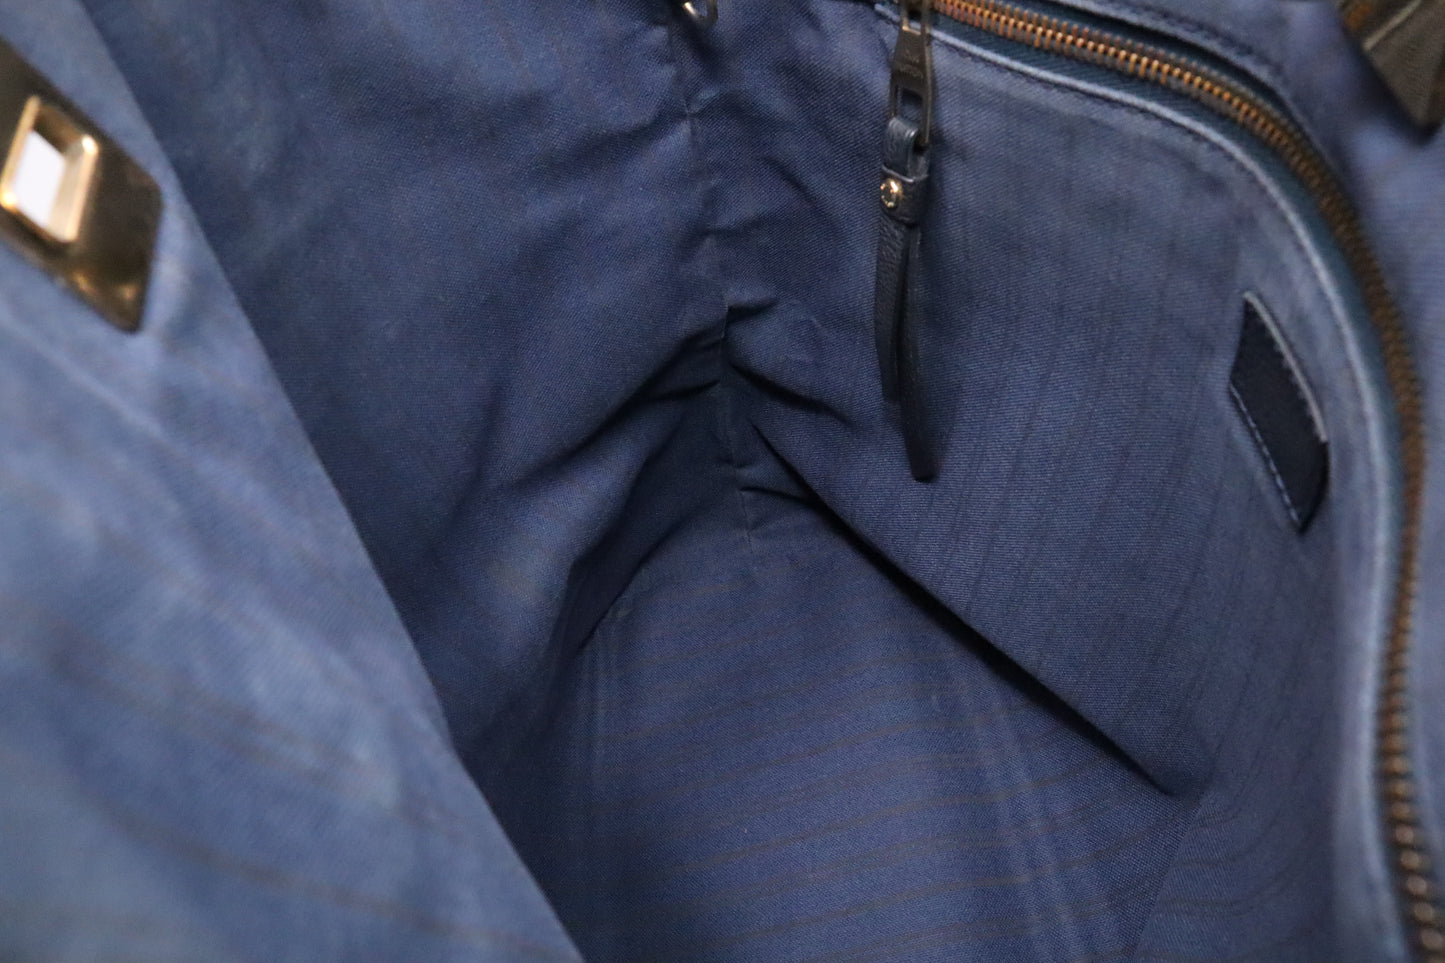 Louis Vuitton Citadine in Navy Blue Empreinte Leather